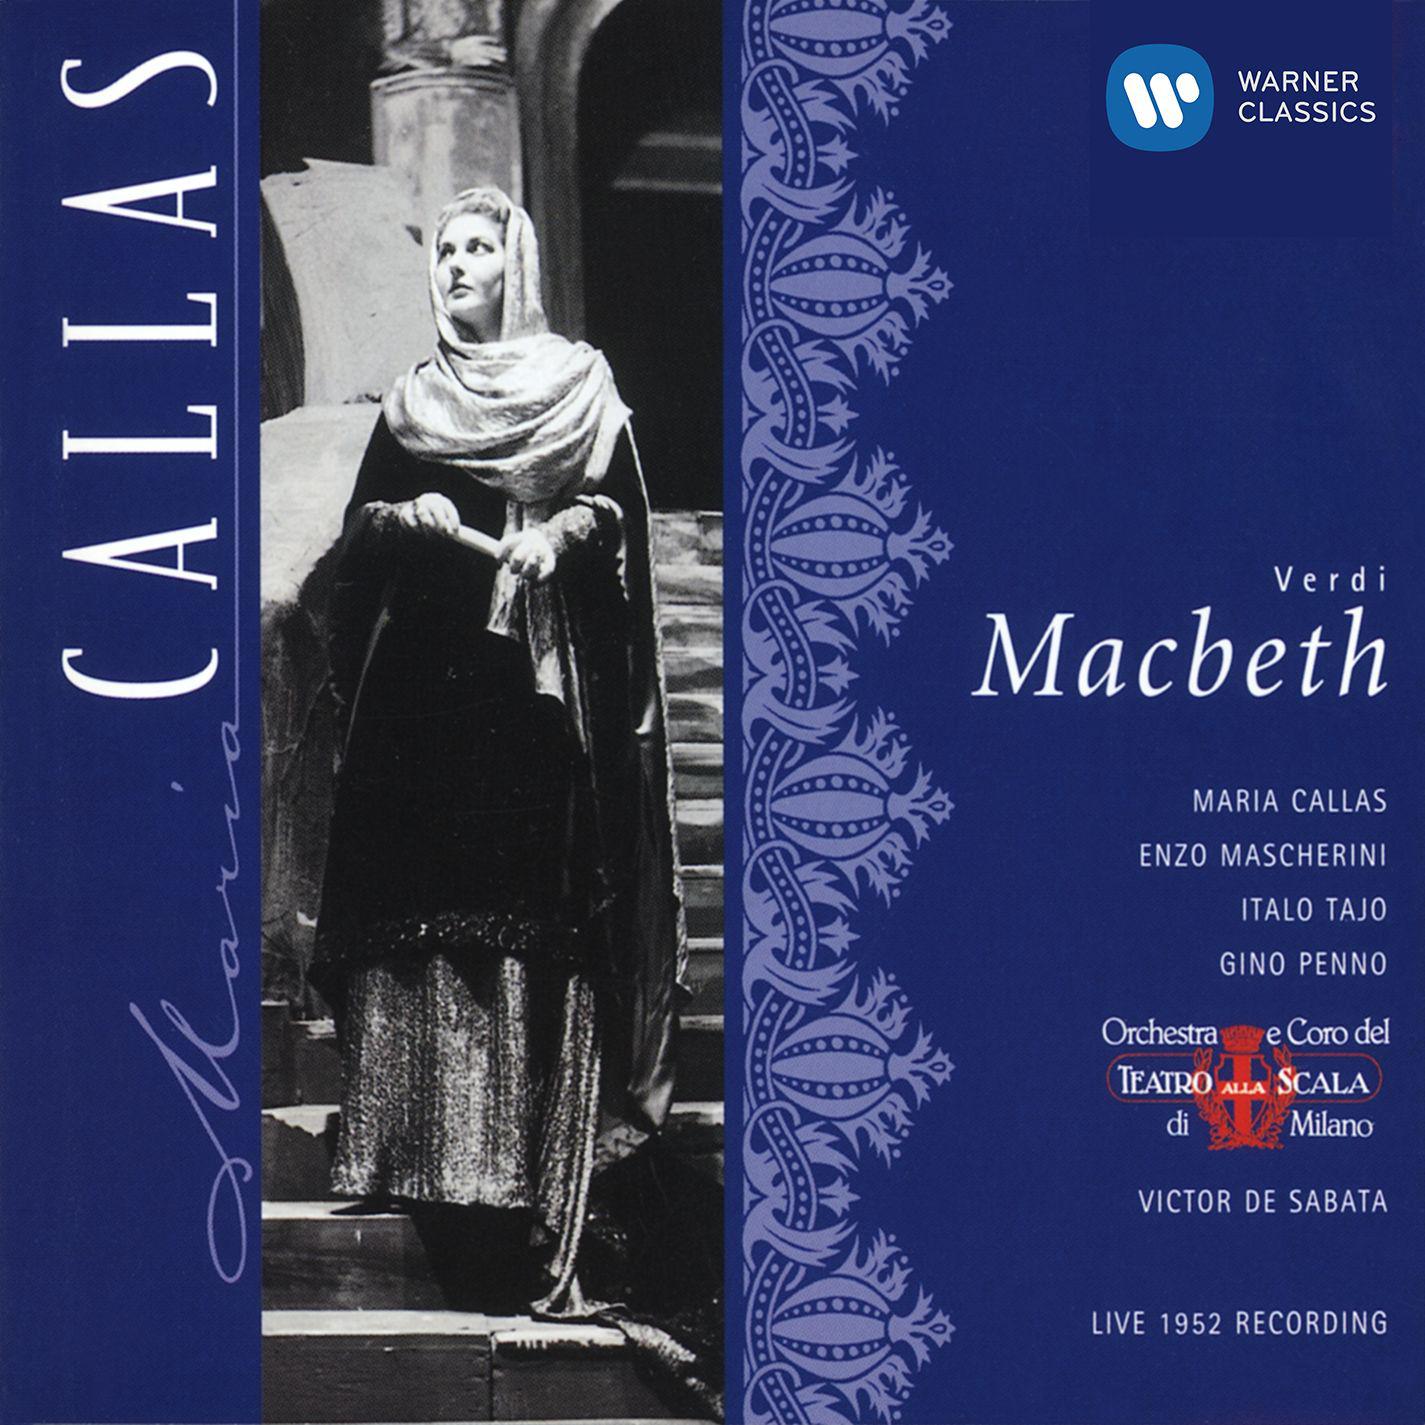 Enzo Mascherini - Macbeth (1997 Remastered Version), Act I Scene 1:Pro Macbetto, il tuo signore